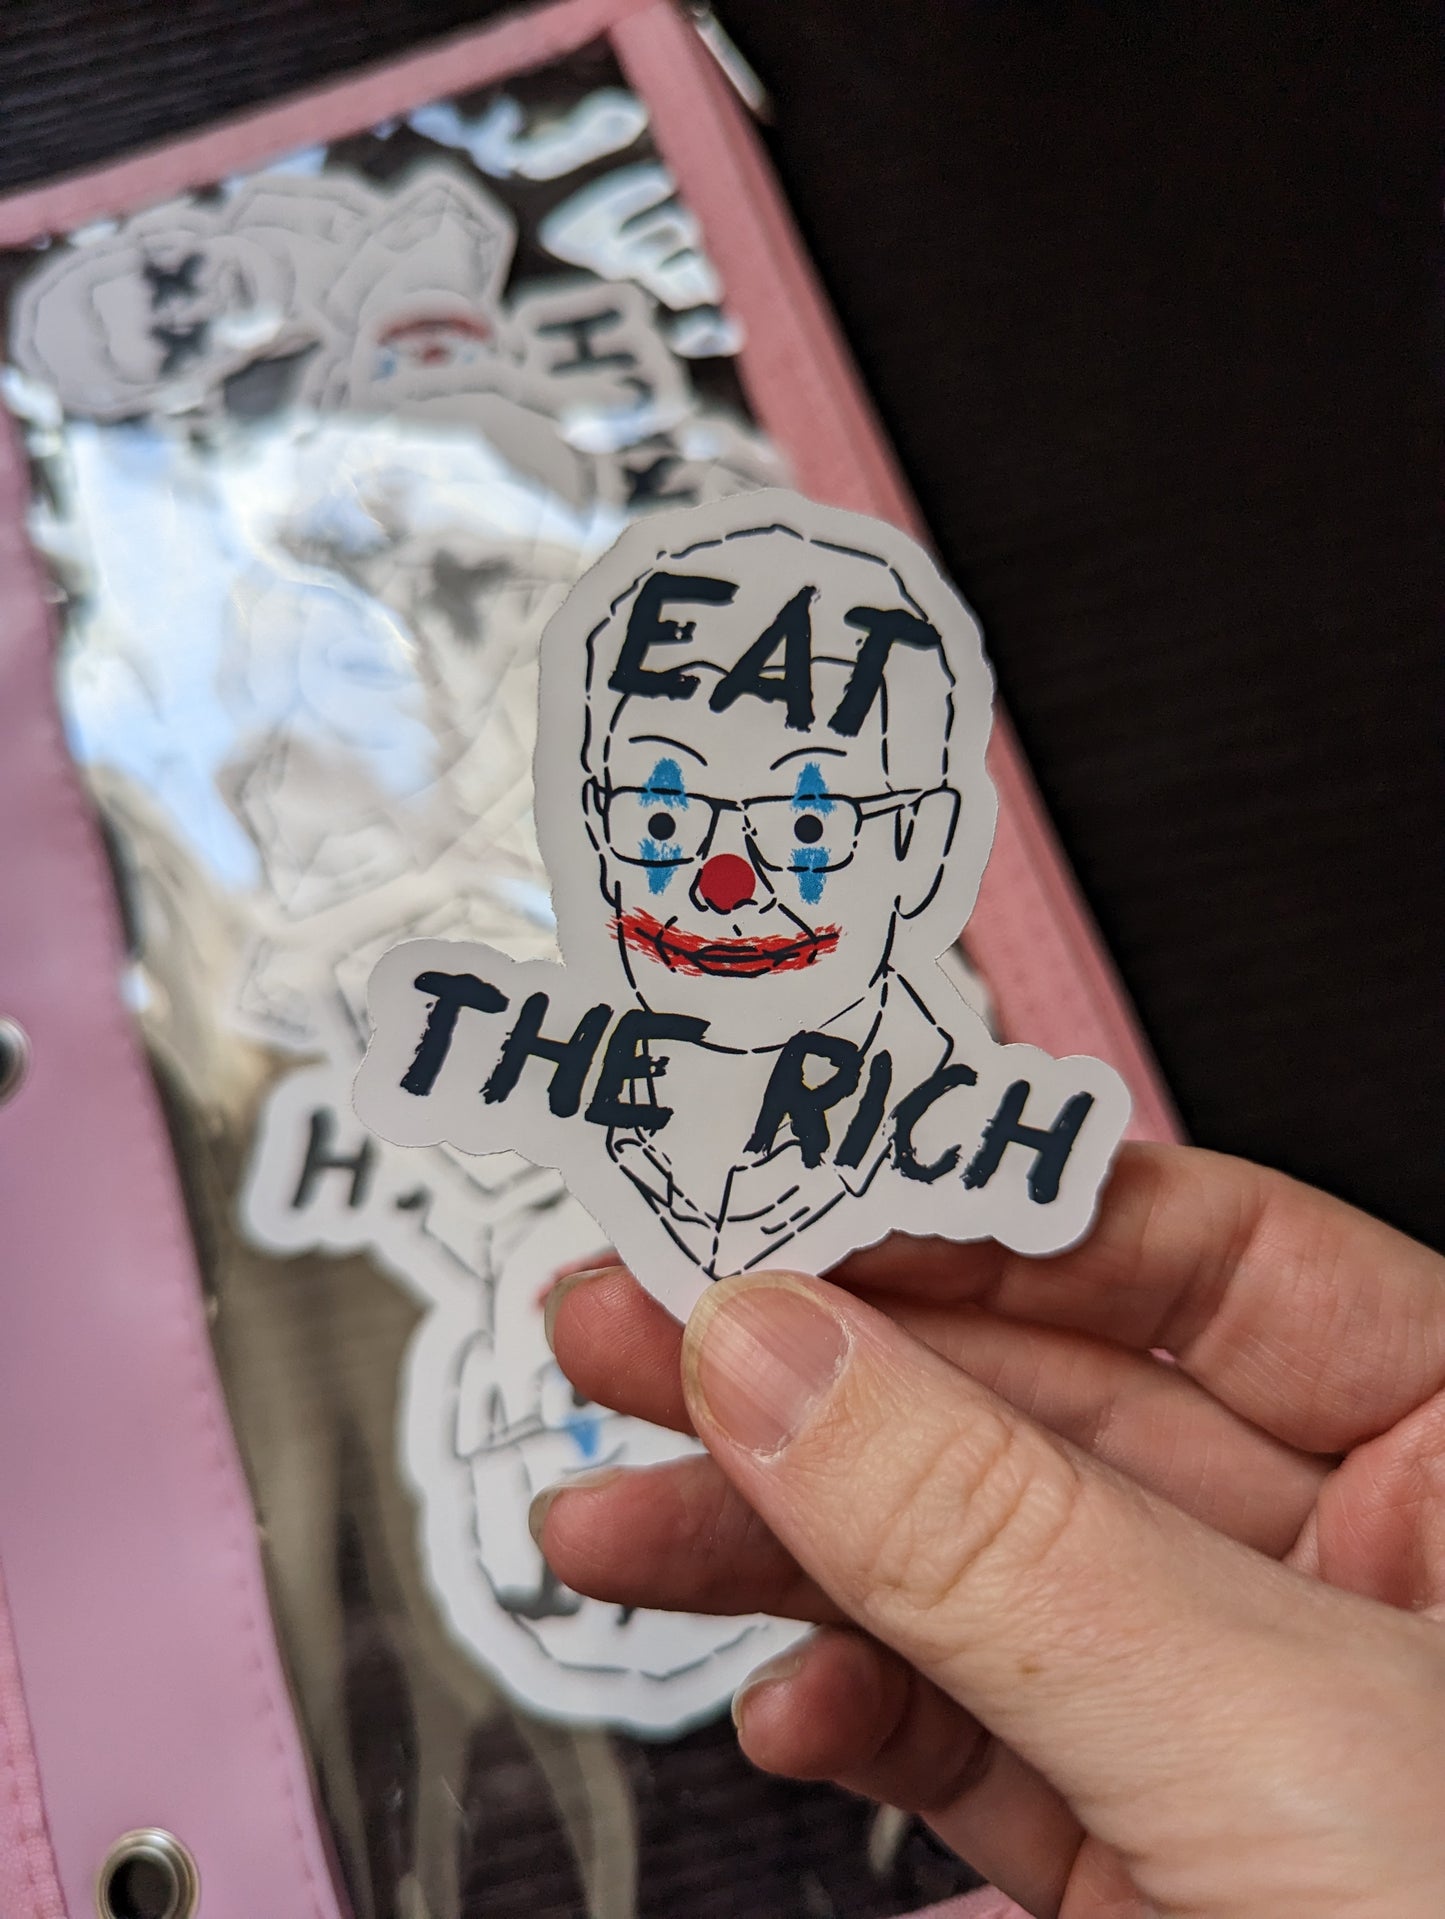 Eat the rich - GWJ